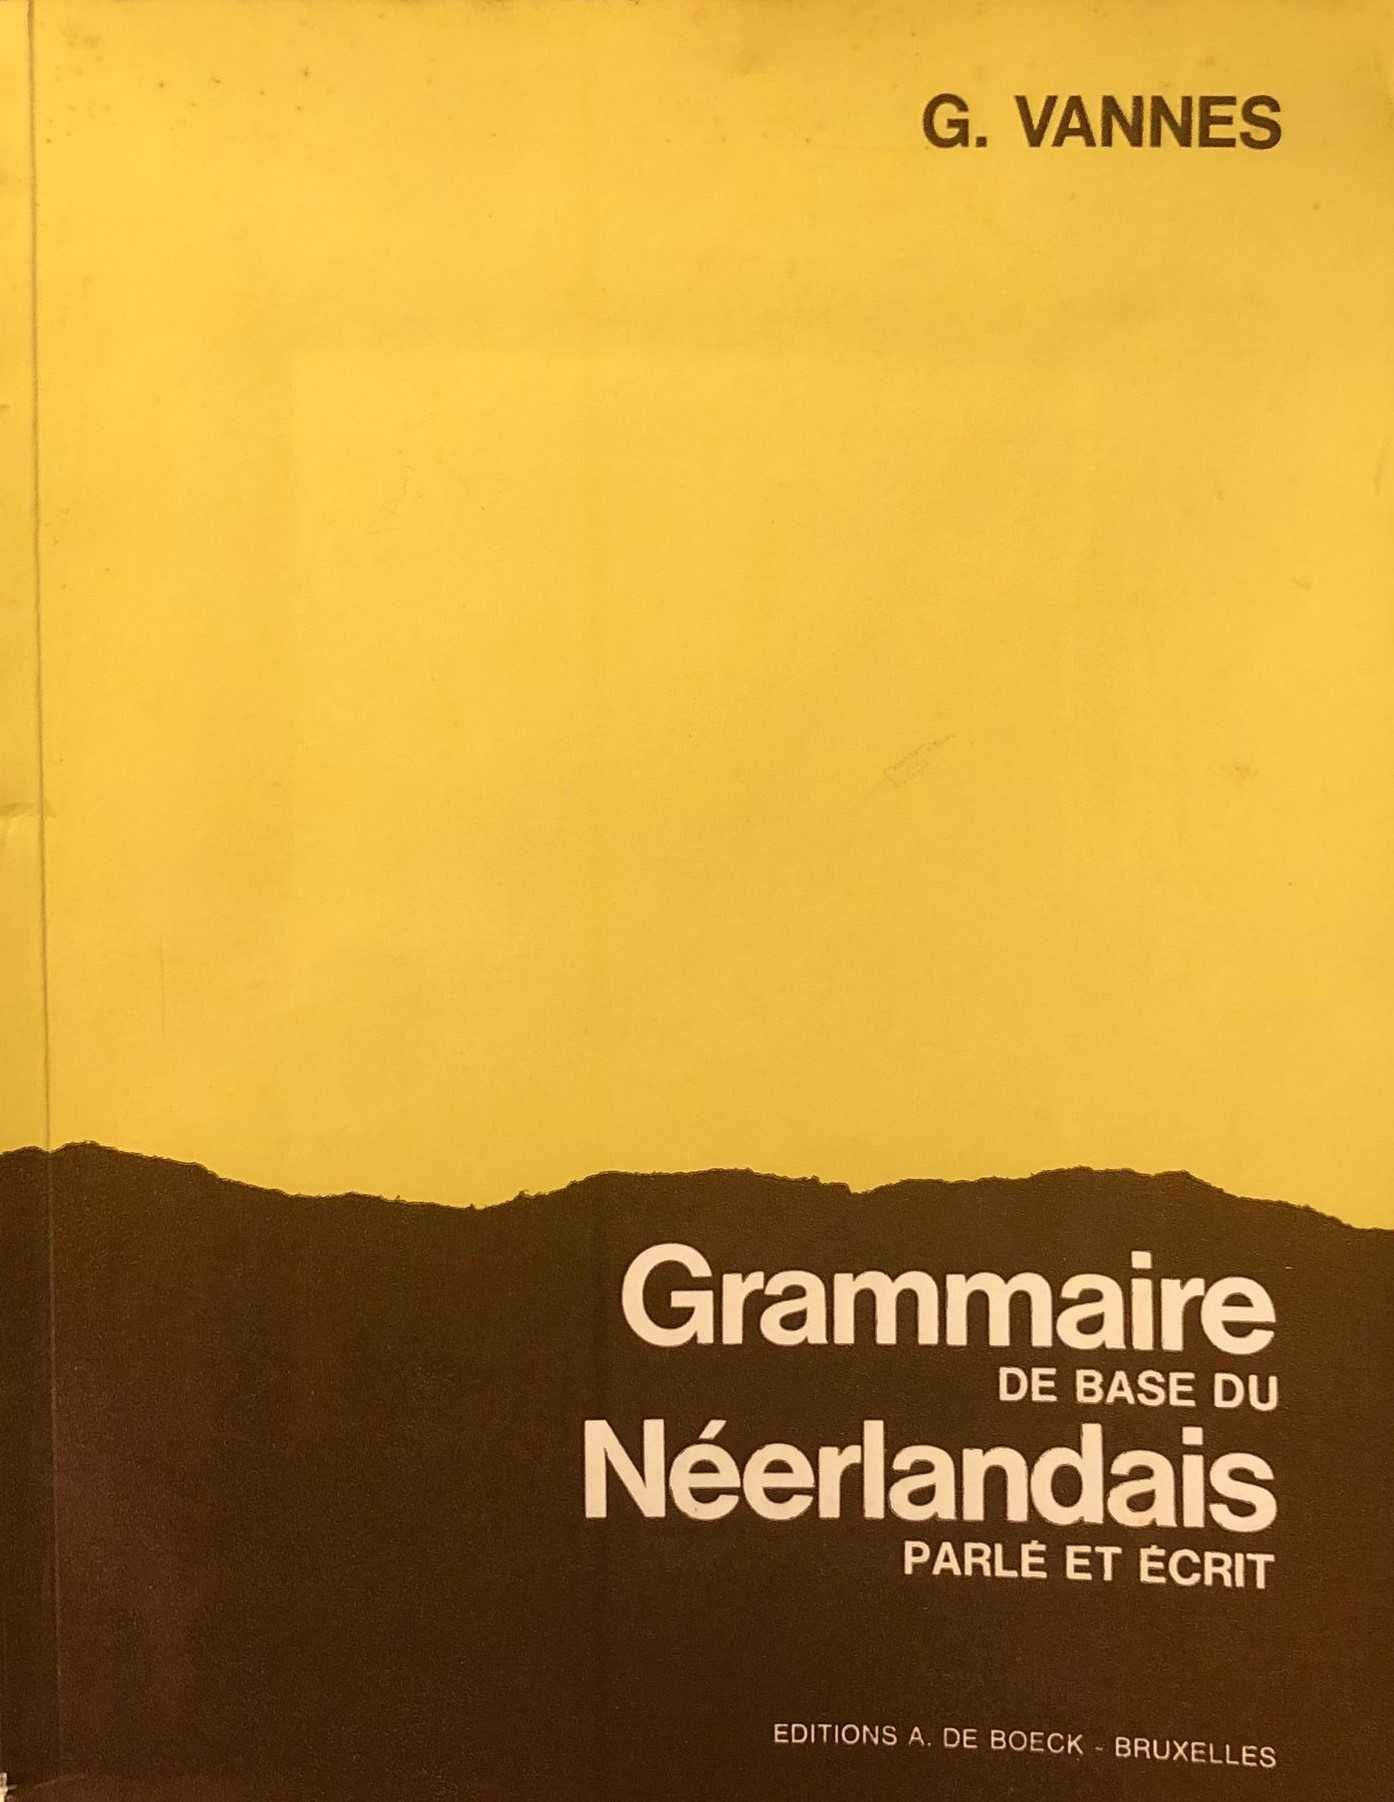 Grammaire de base du Néerlandais parle et écrit - 1975